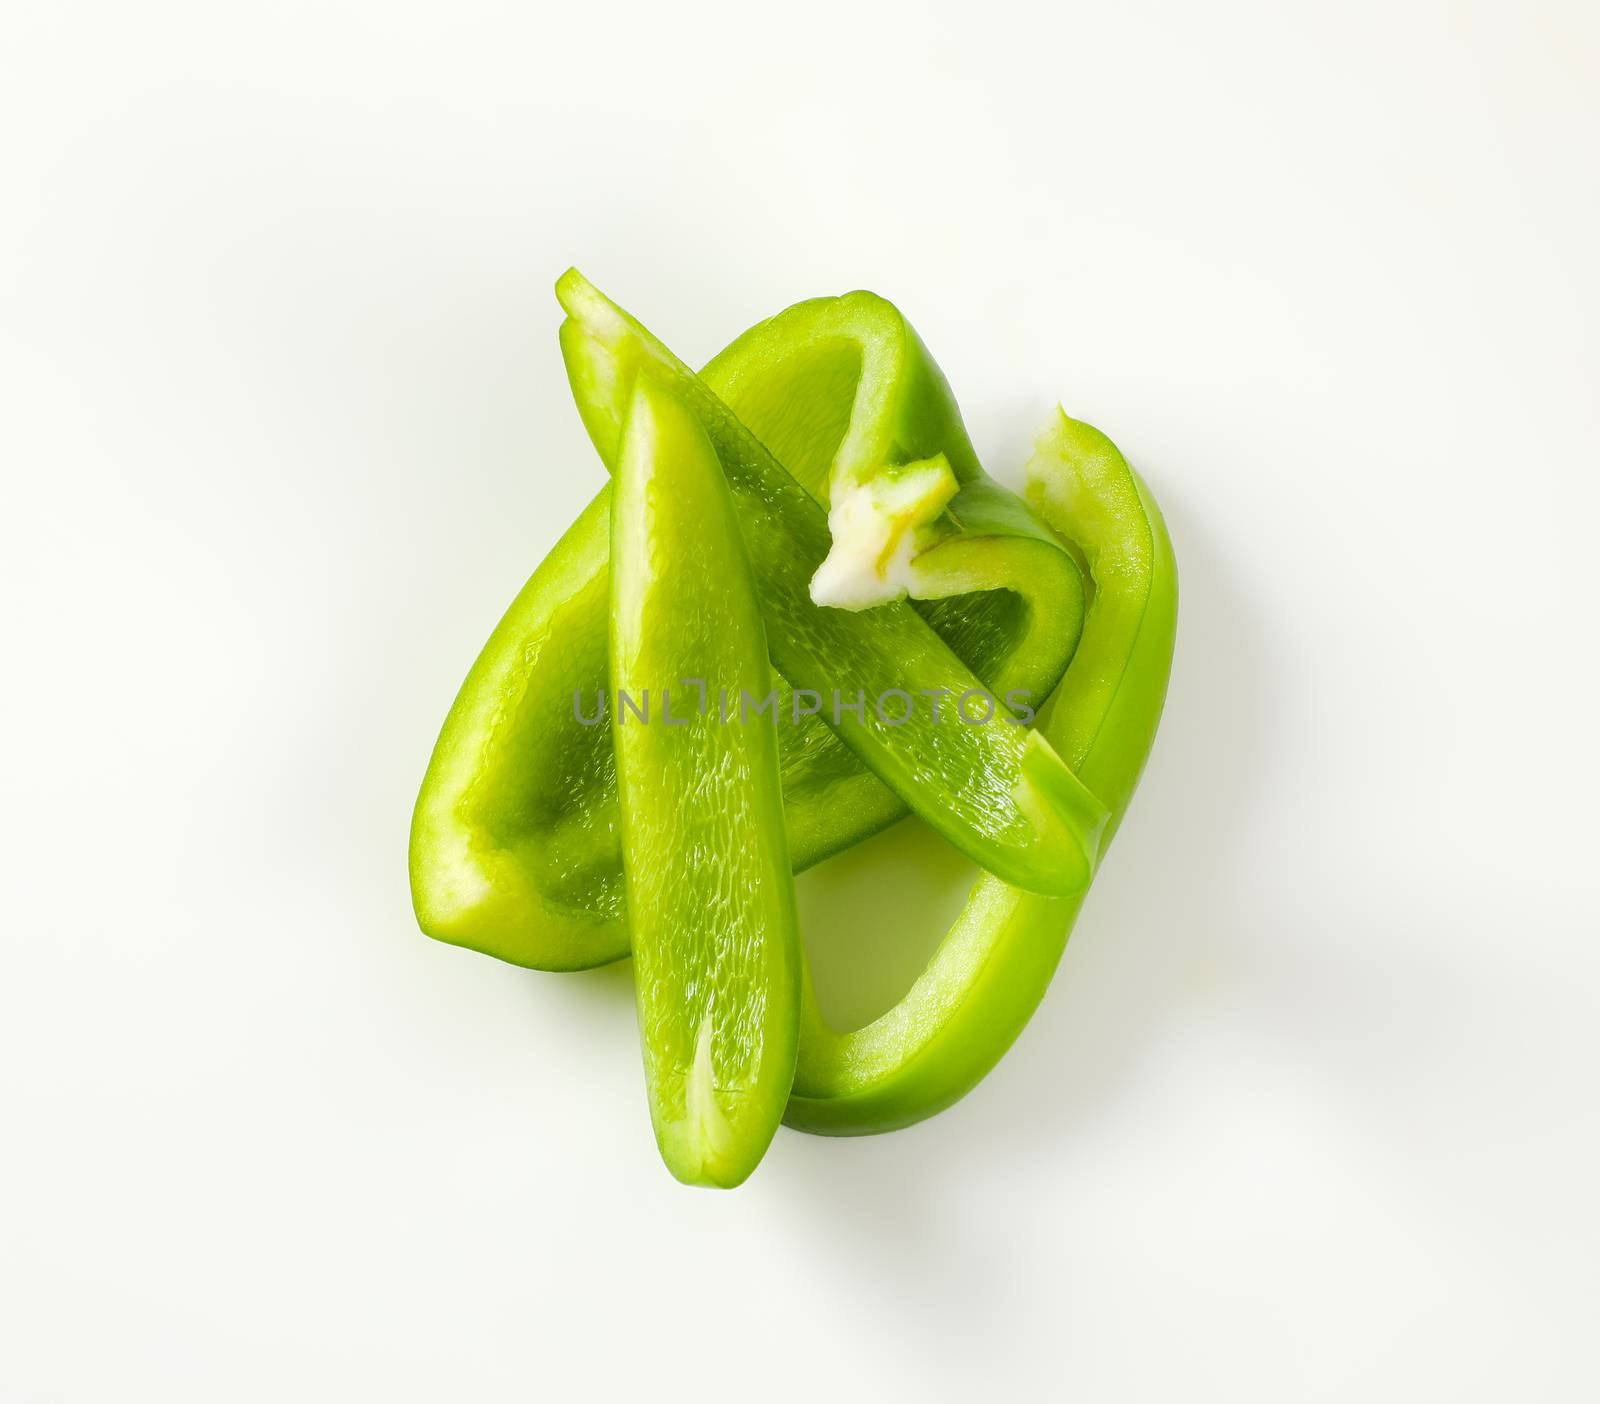 Green bell pepper by Digifoodstock